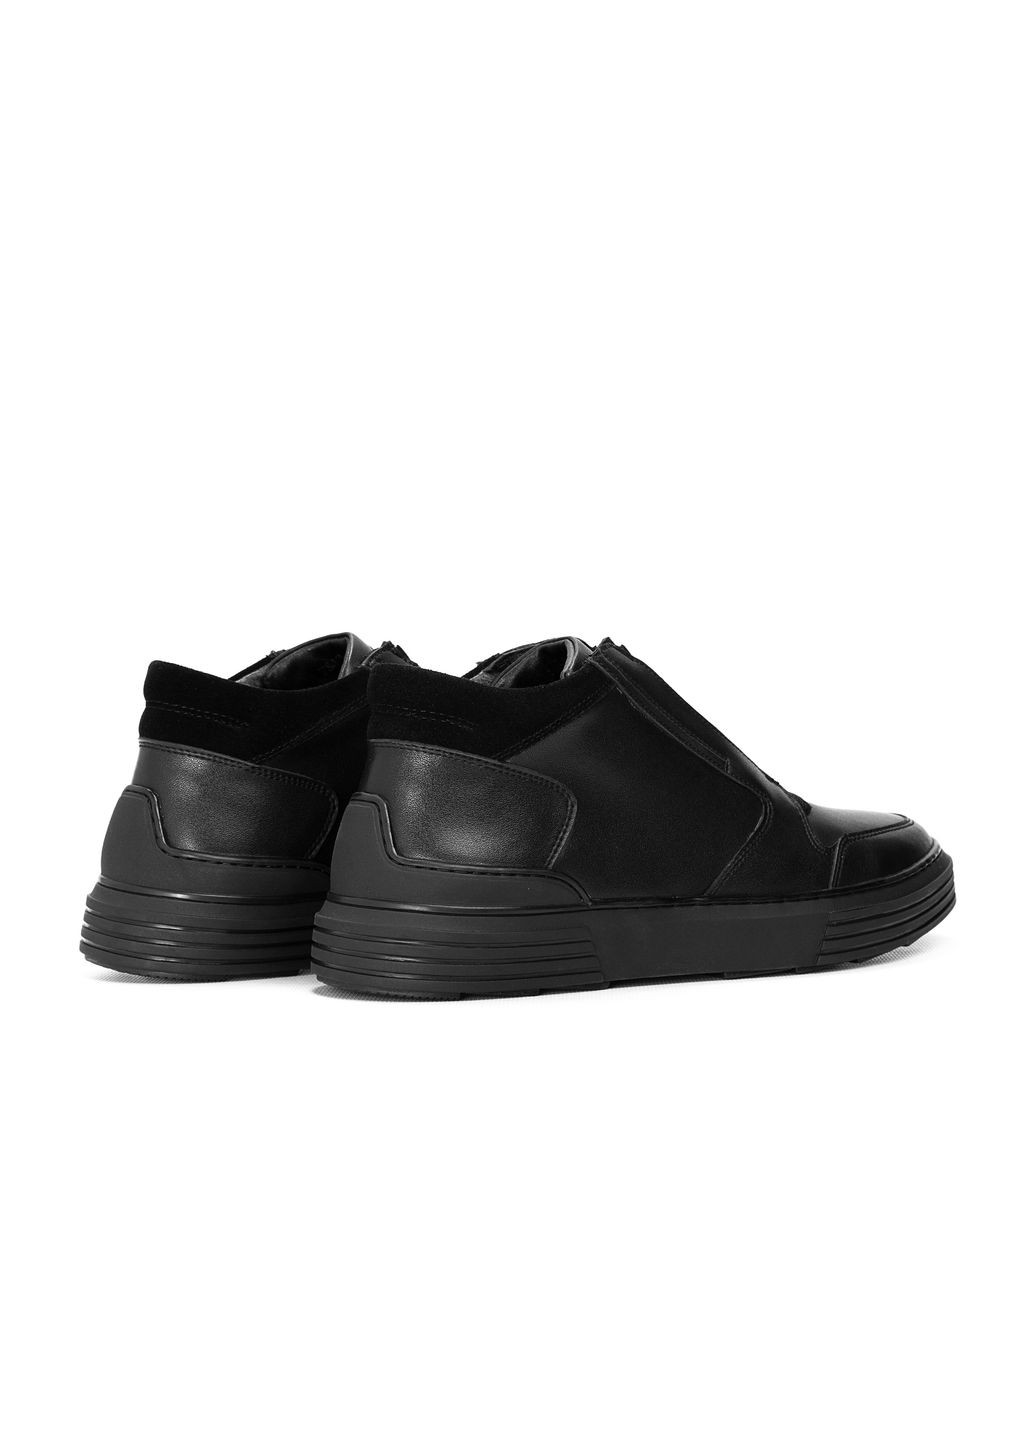 Черные осенние мужские ботинки Respect